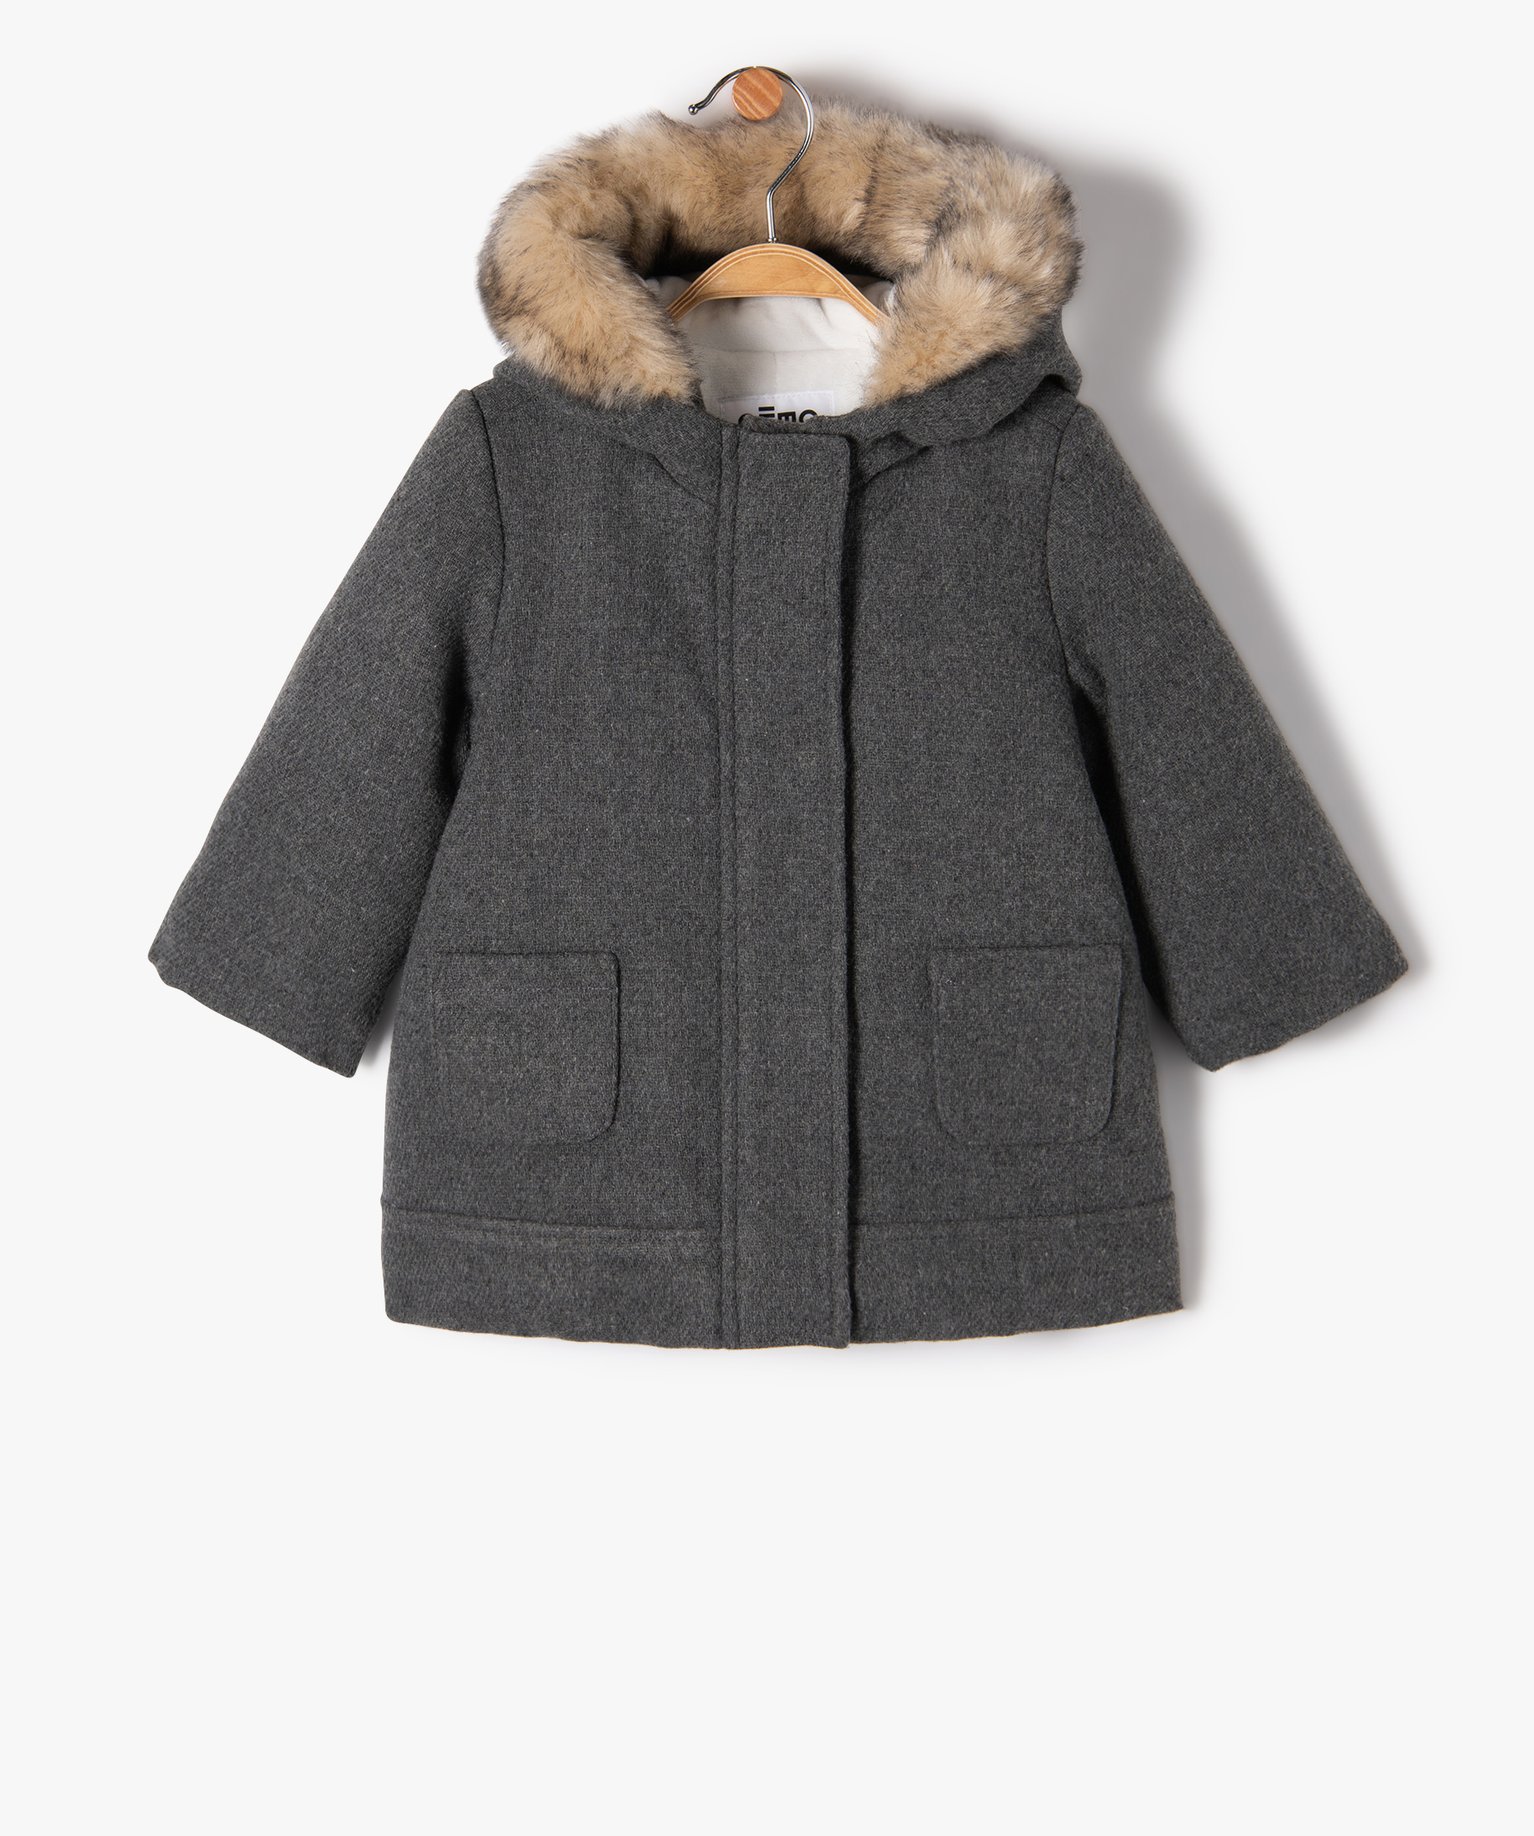 Manteau bébé fille doublé à capuche - 18M - gris fonce - GEMO